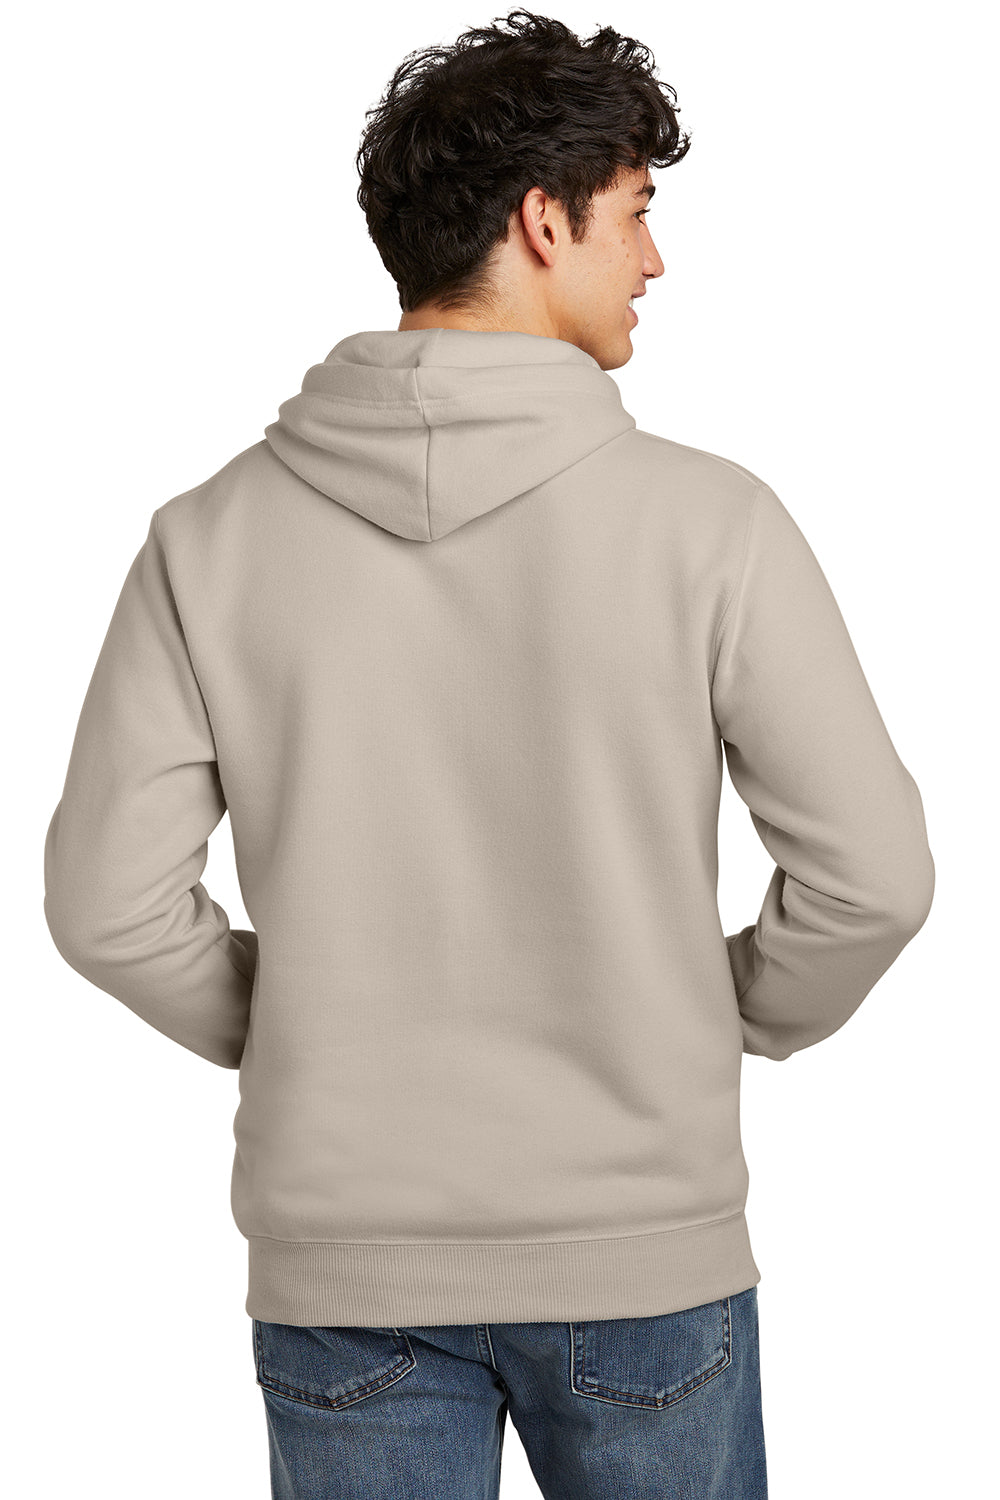 Jerzees 700M Mens Eco Premium Hooded Sweatshirt Hoodie Putty Back